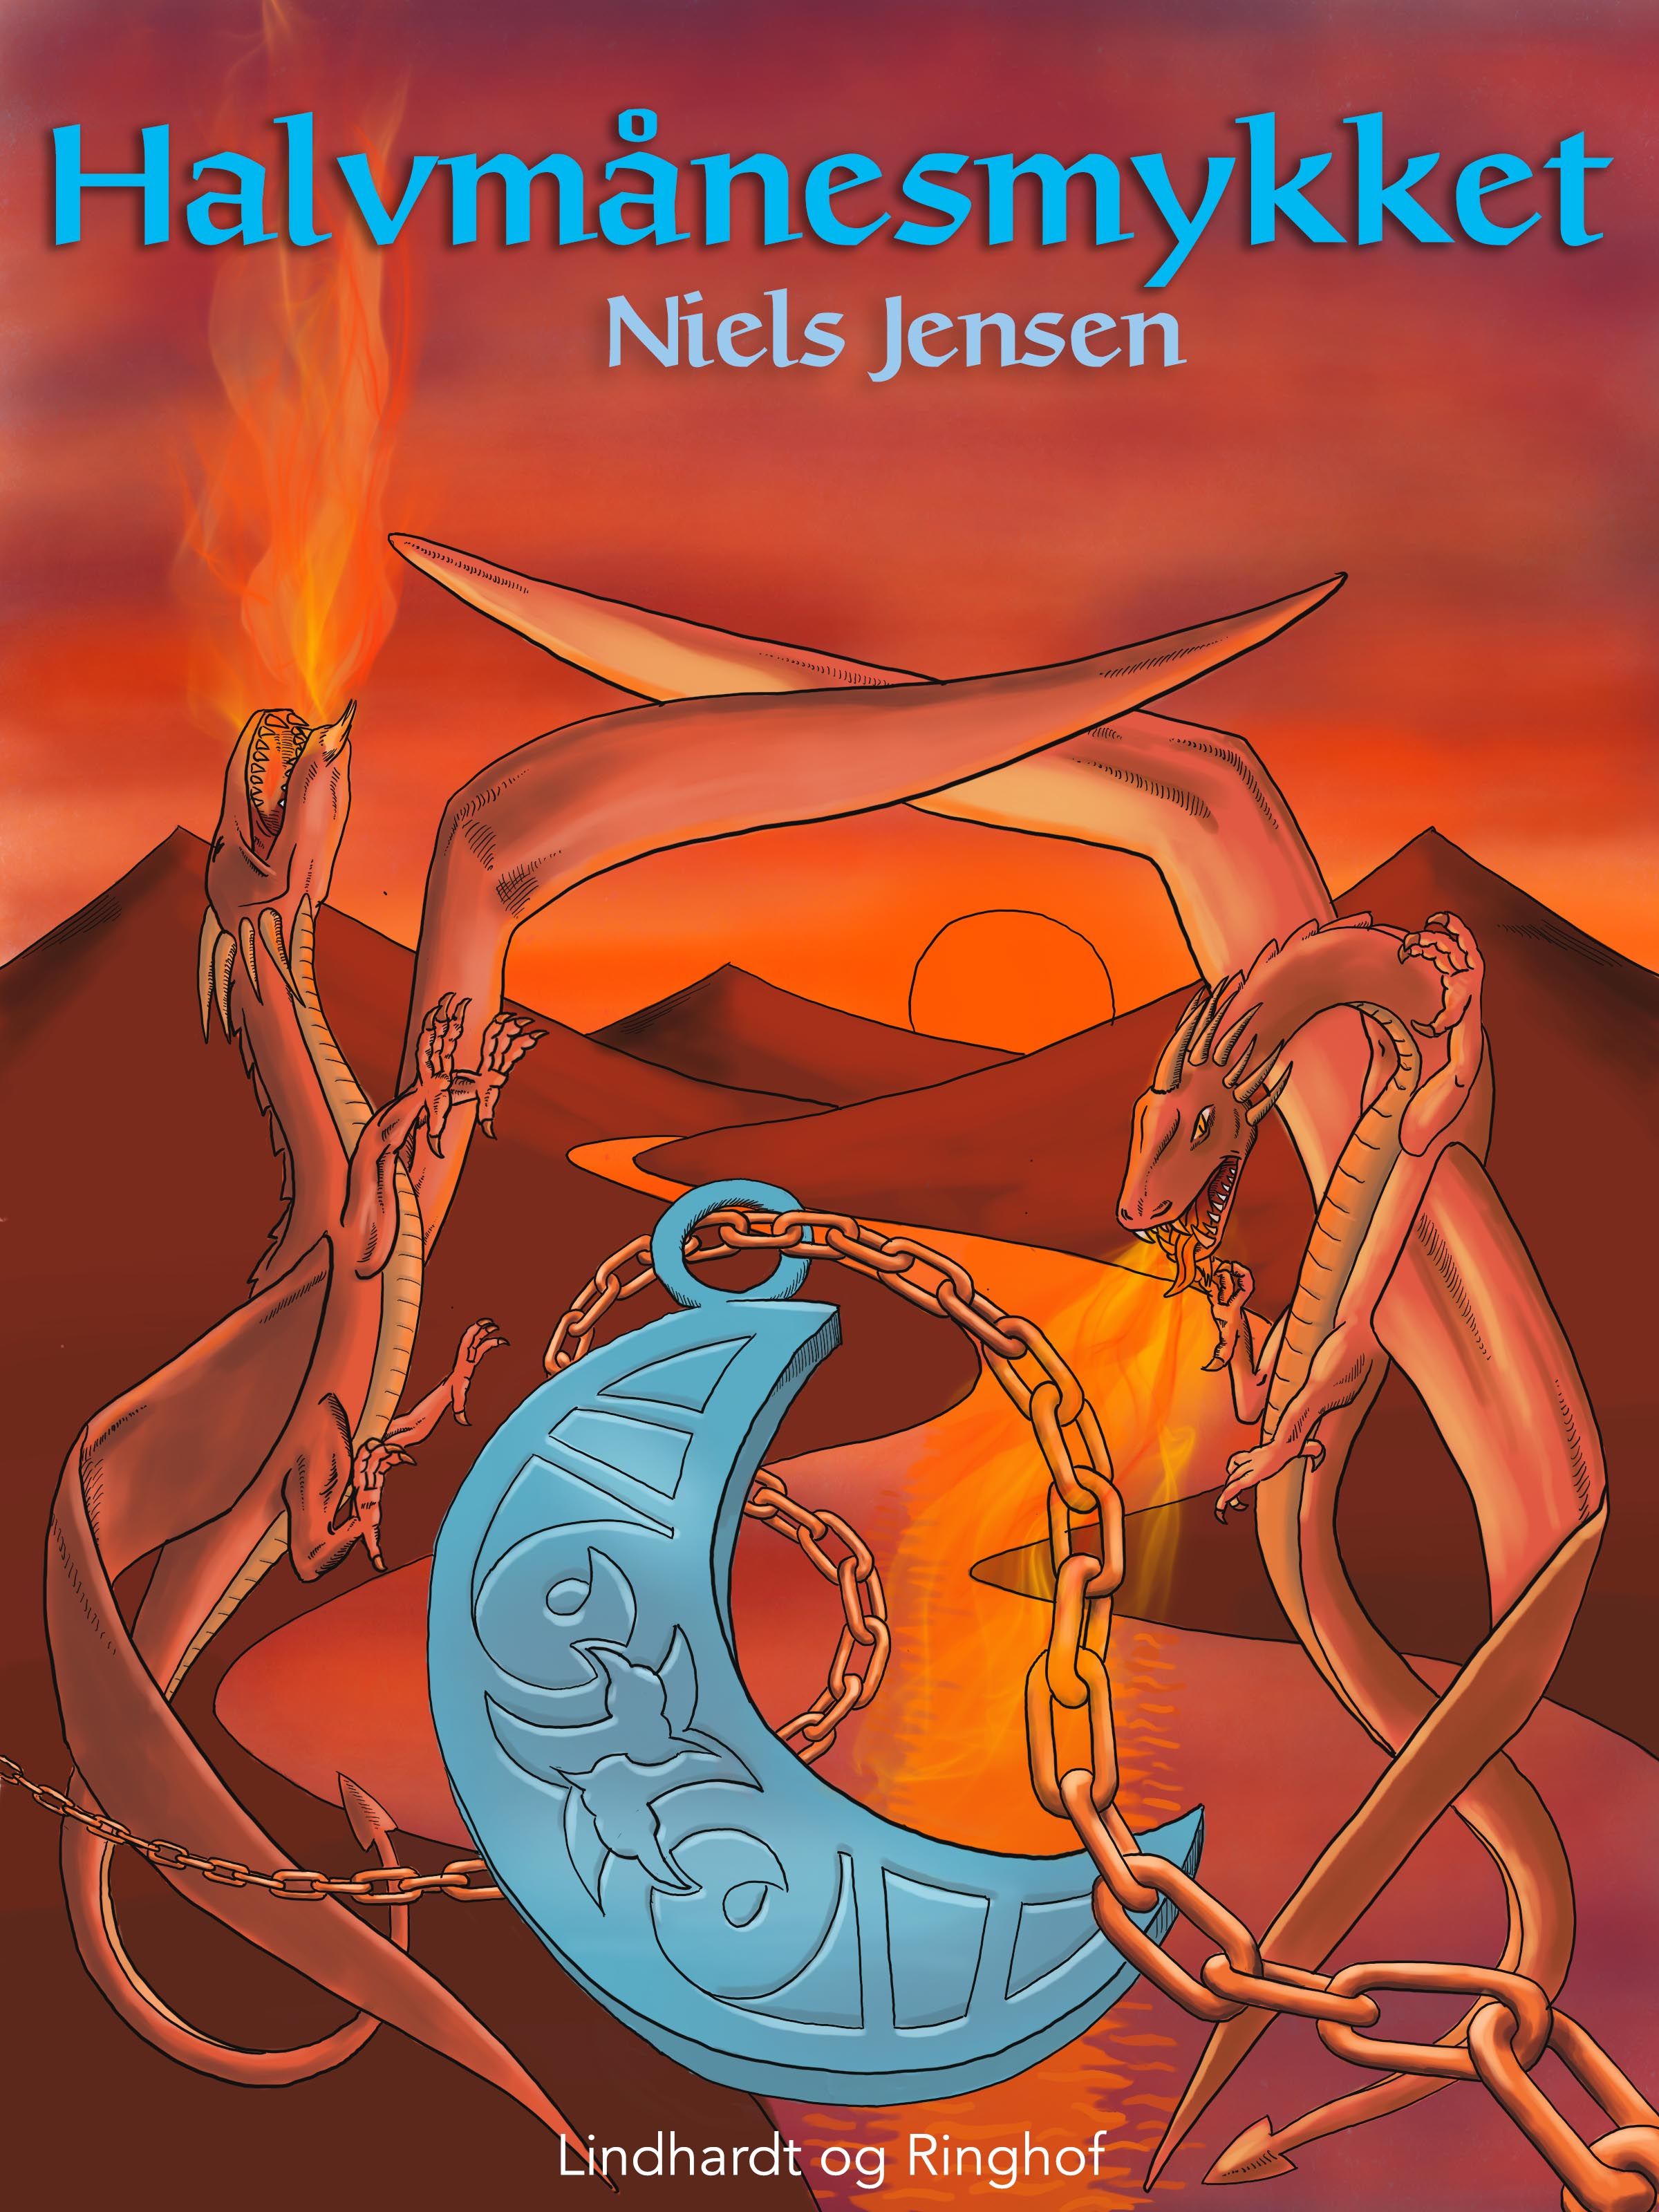 Halvmånesmykket, ljudbok av Niels Jensen